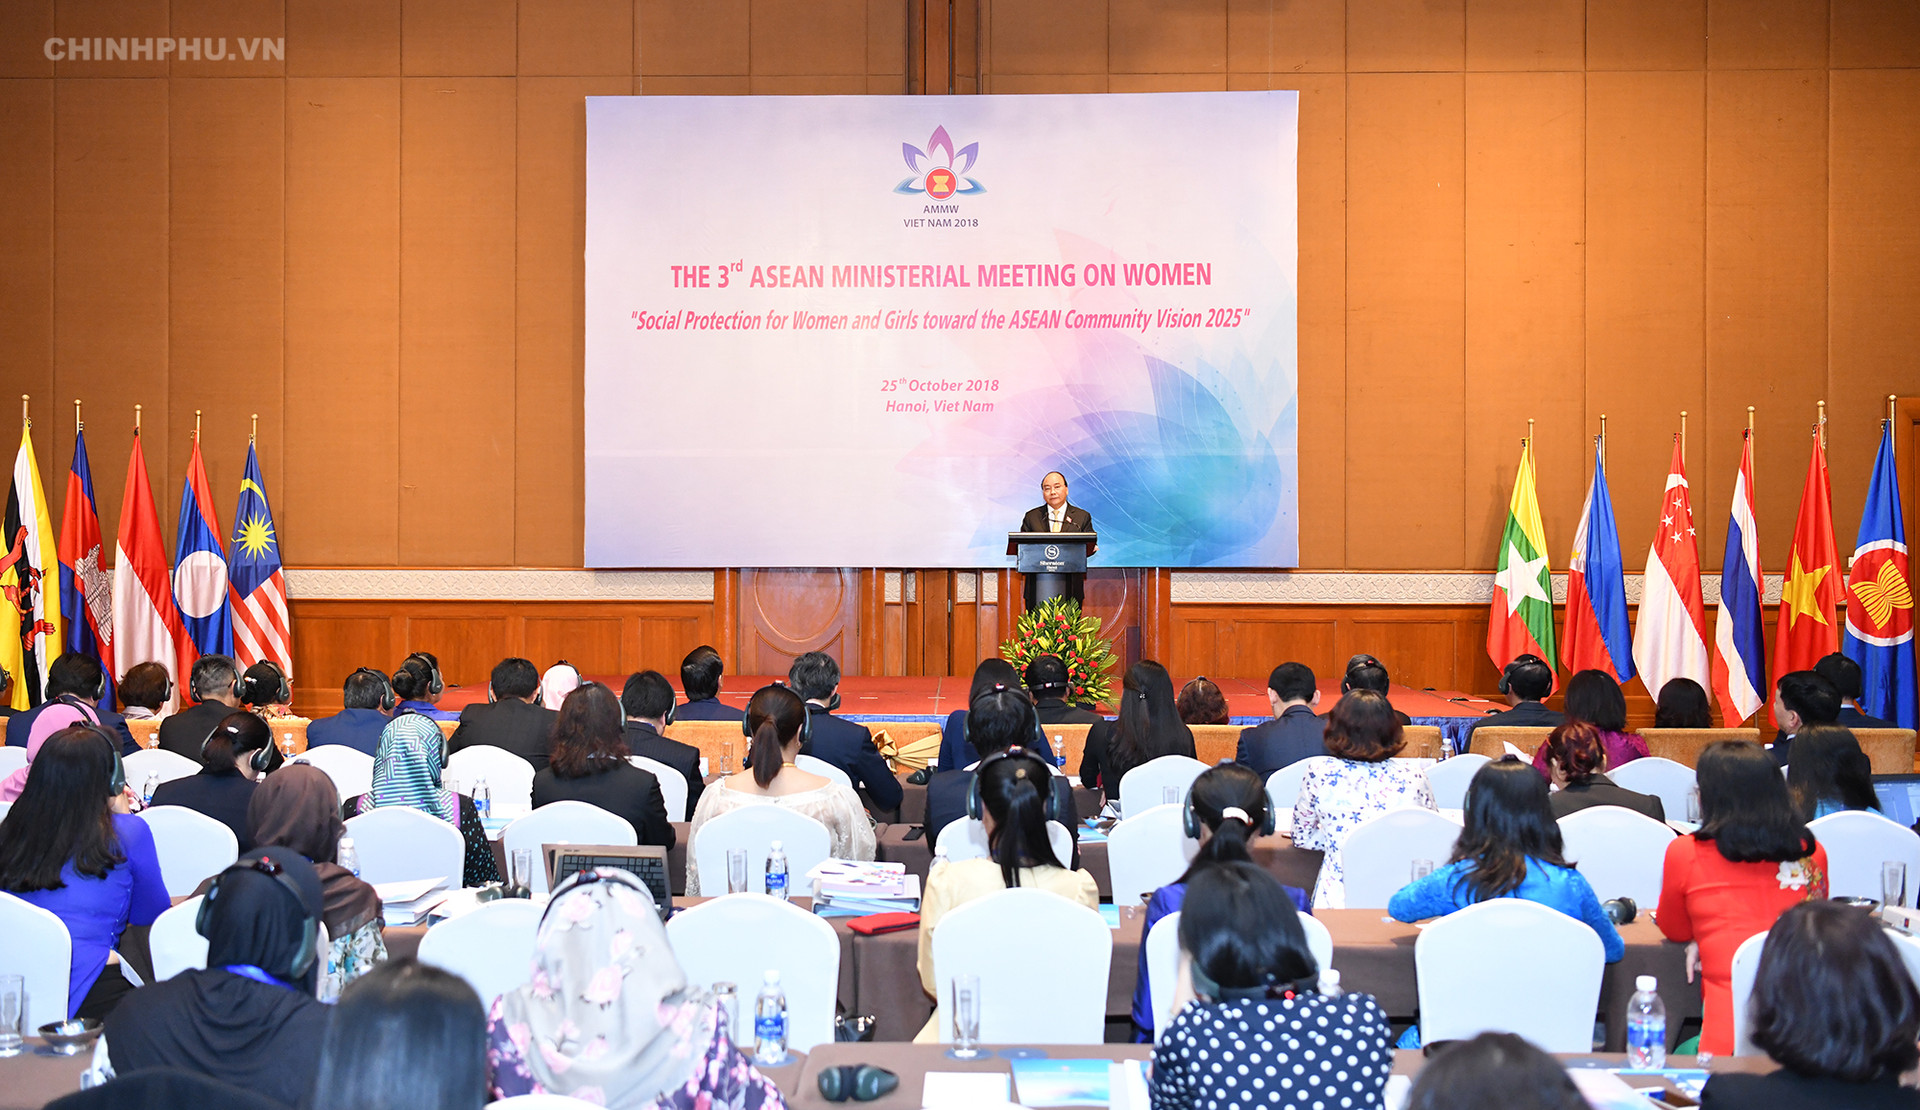 Thủ tướng dự khai mạc Hội nghị Bộ trưởng phụ nữ ASEAN